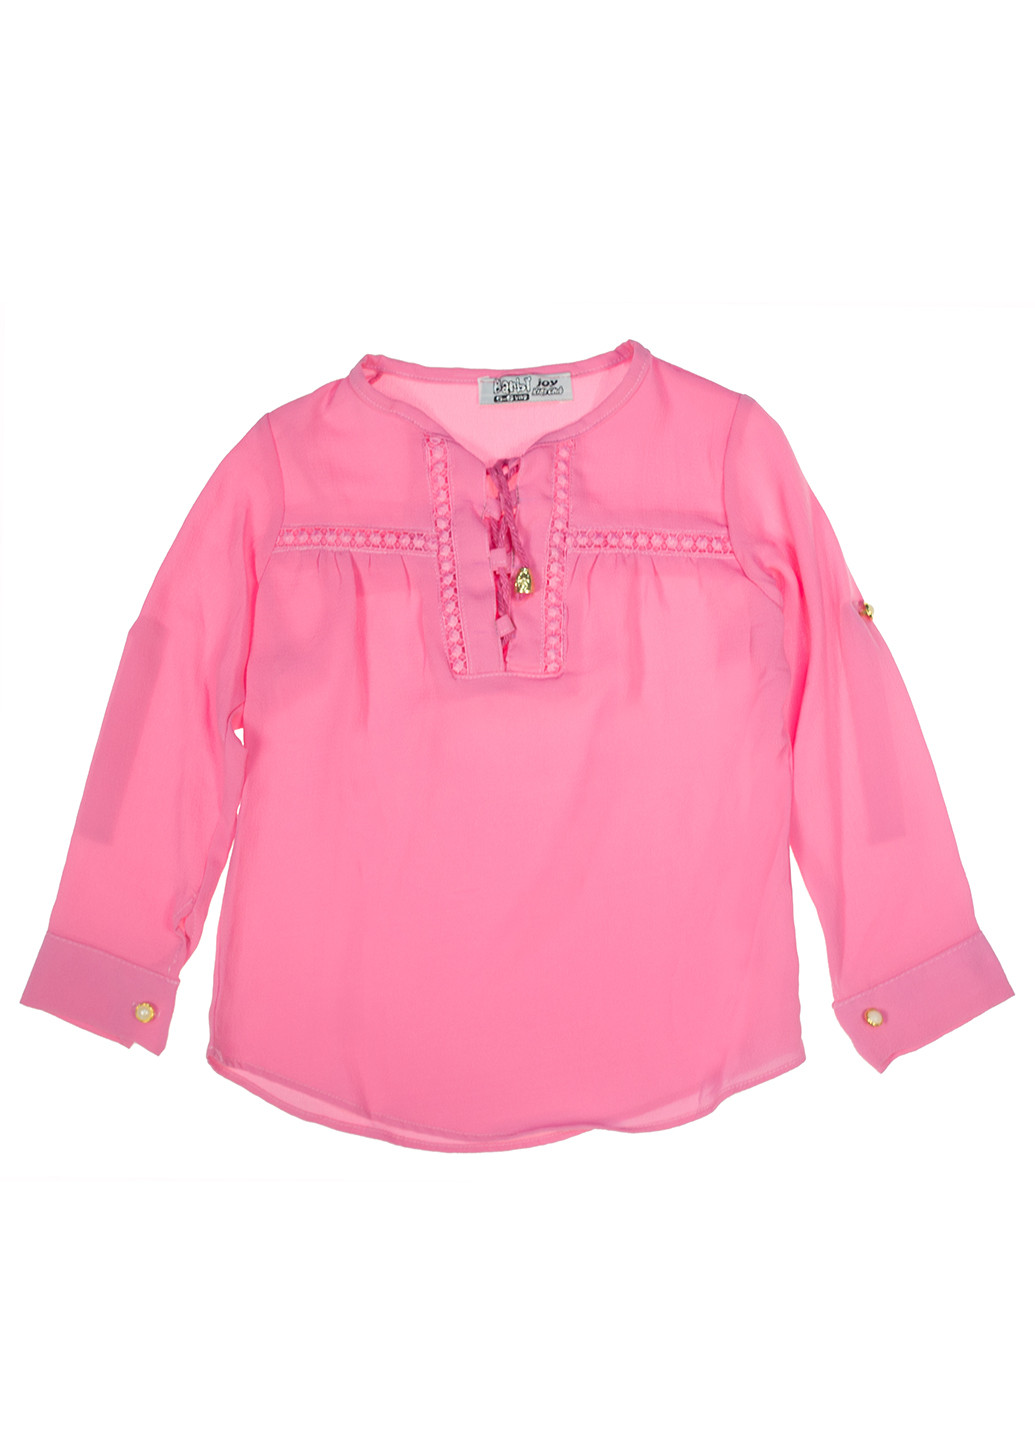 Розовая однотонная блузка с длинным рукавом Barbie joy летняя